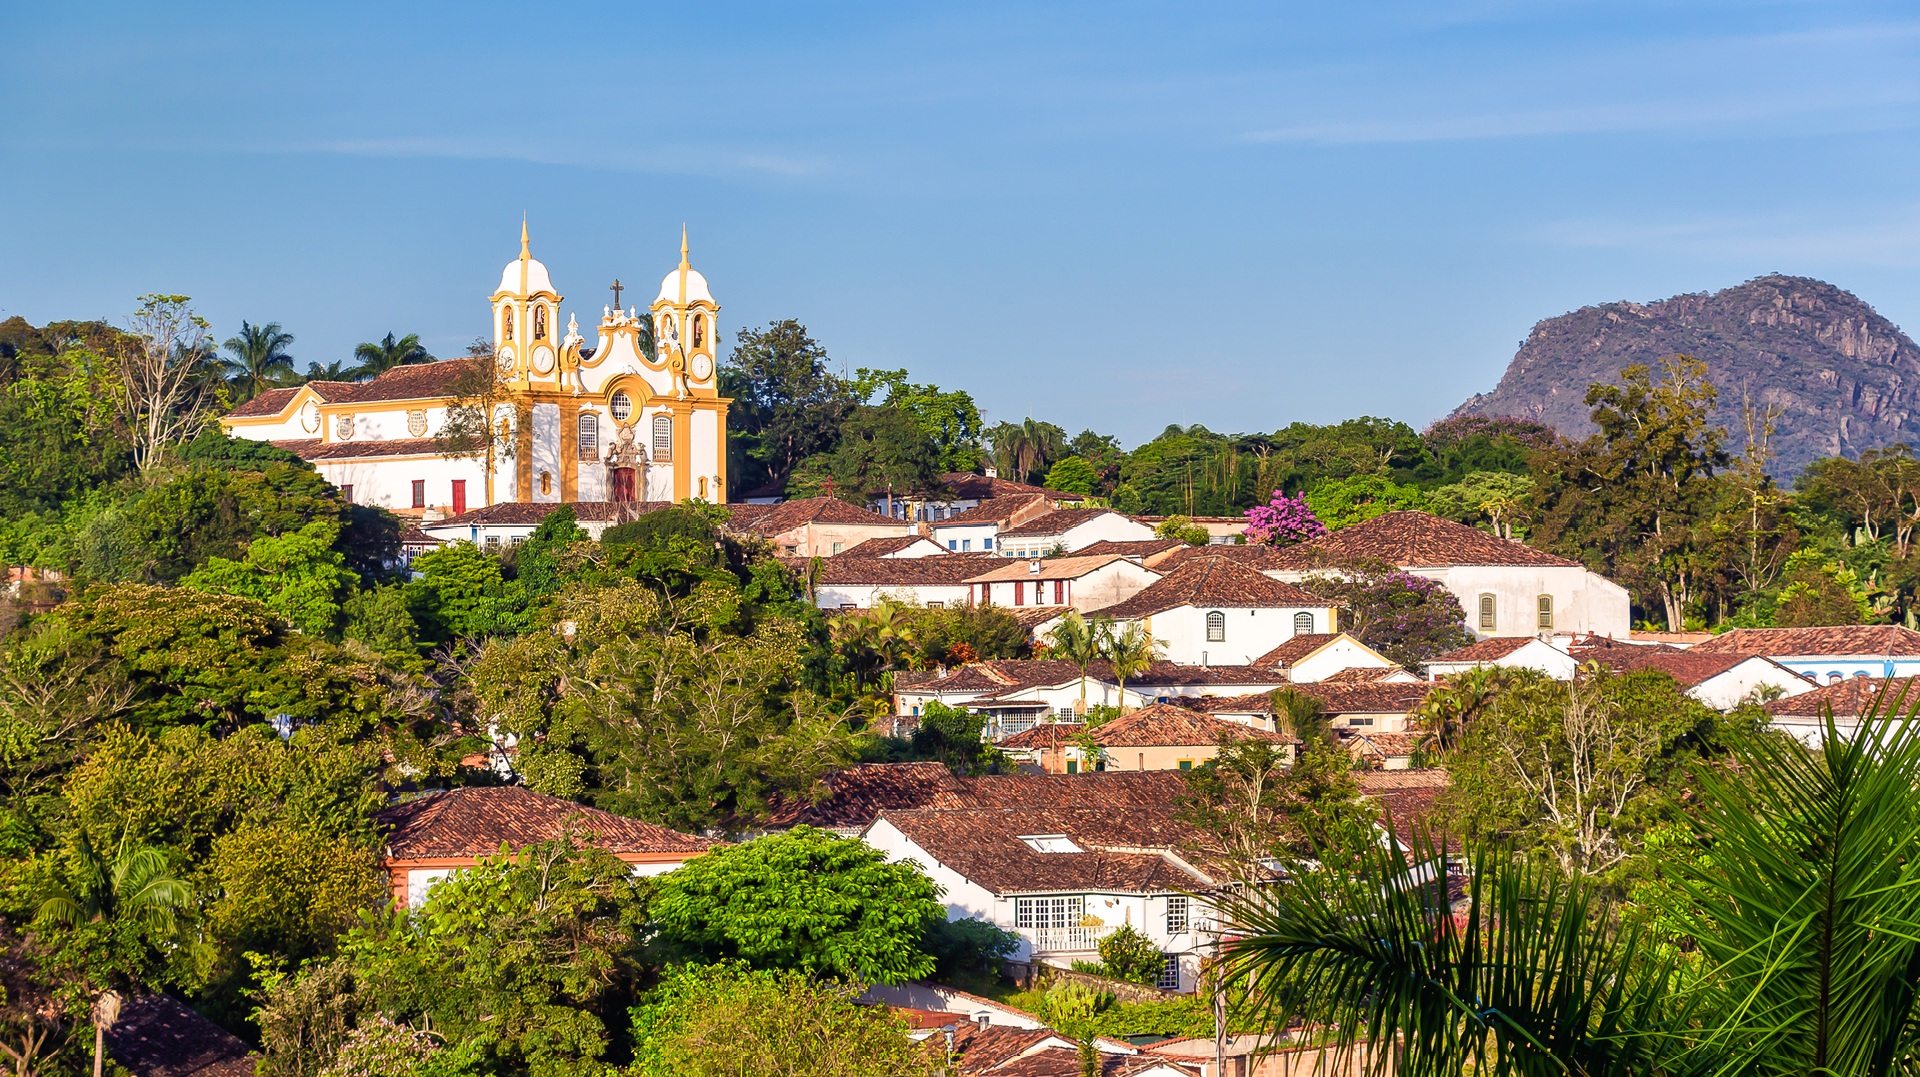 Onde ir em Tiradentes: confira os encantos da arquitetura barroca e das belezas naturais do interior de Minas Gerais!